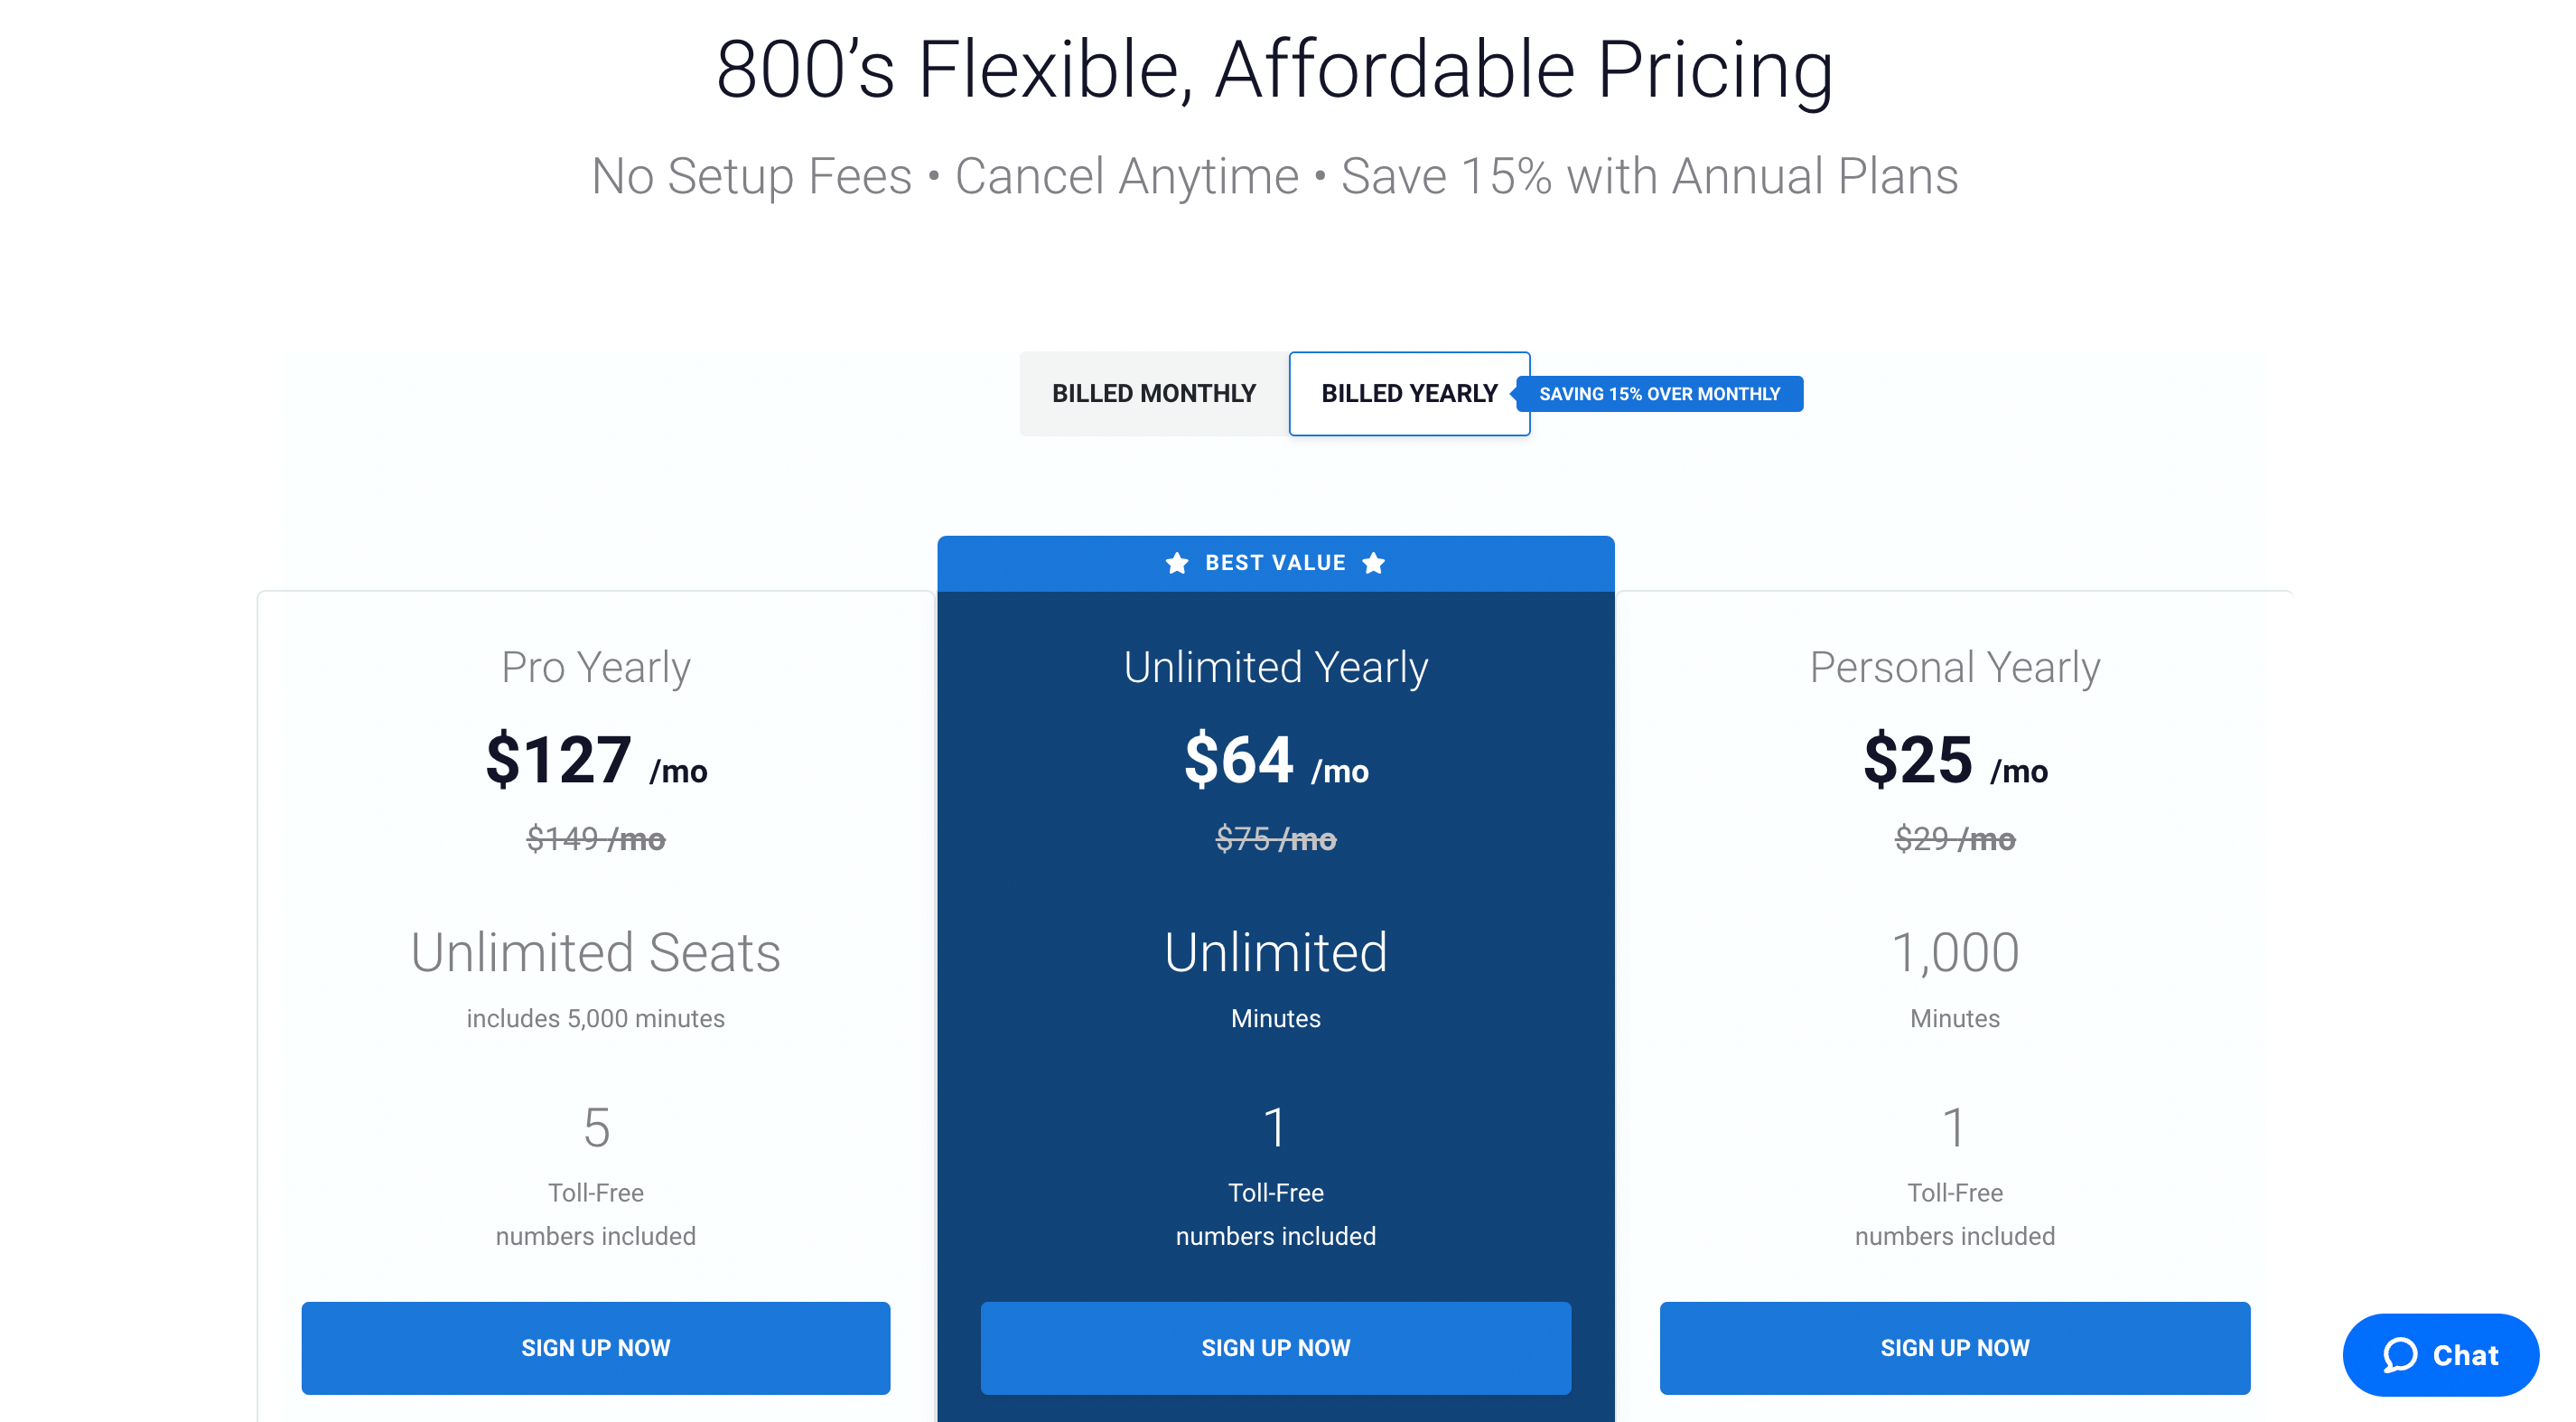 800.com pricing